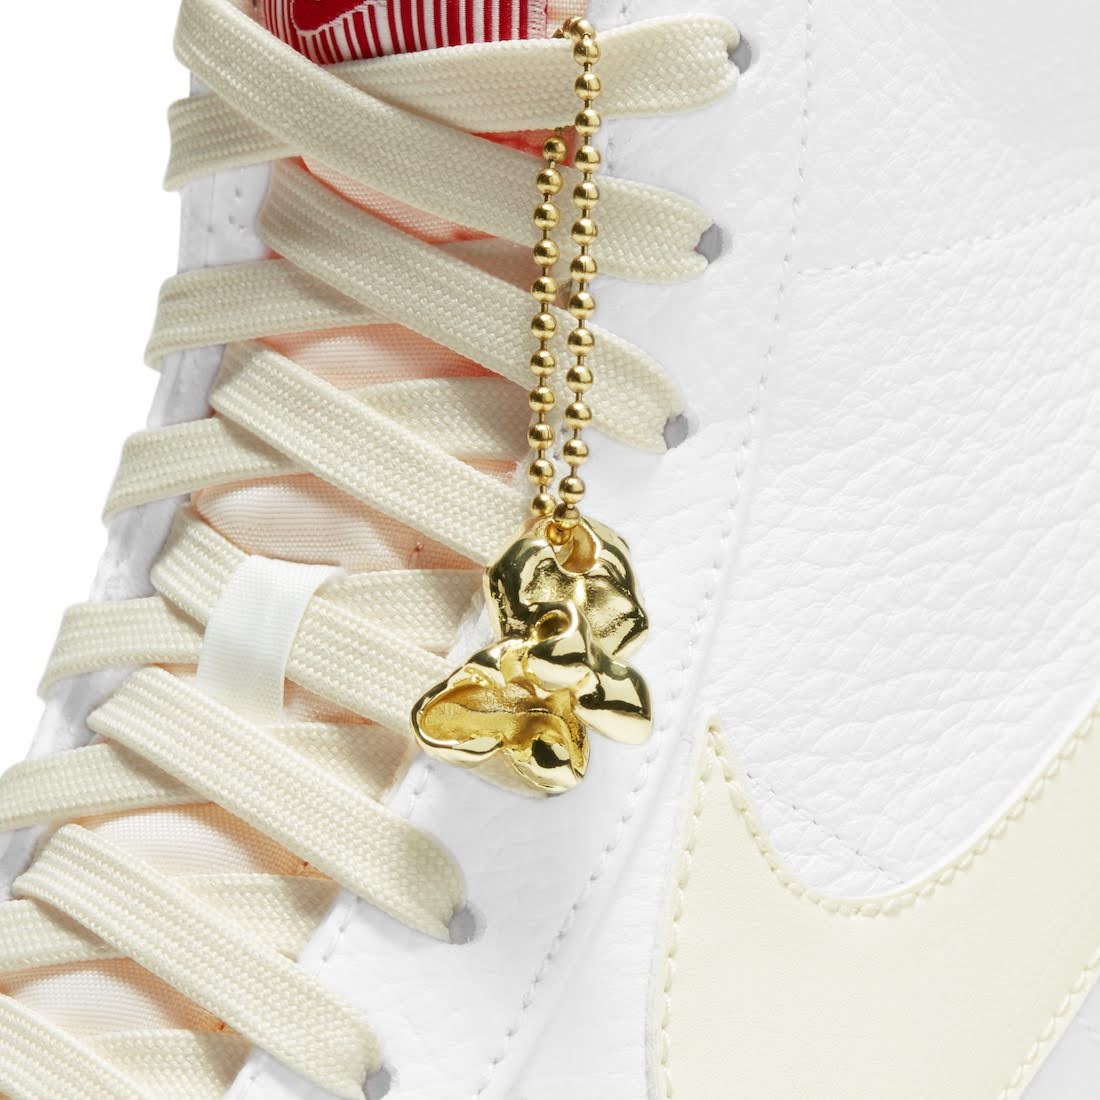 ナイキ ブレーザー ミッド "ポップコーン" Nike-Blazer-Mid-77-Vintage-Popcorn-CW6421-100-chain-tag